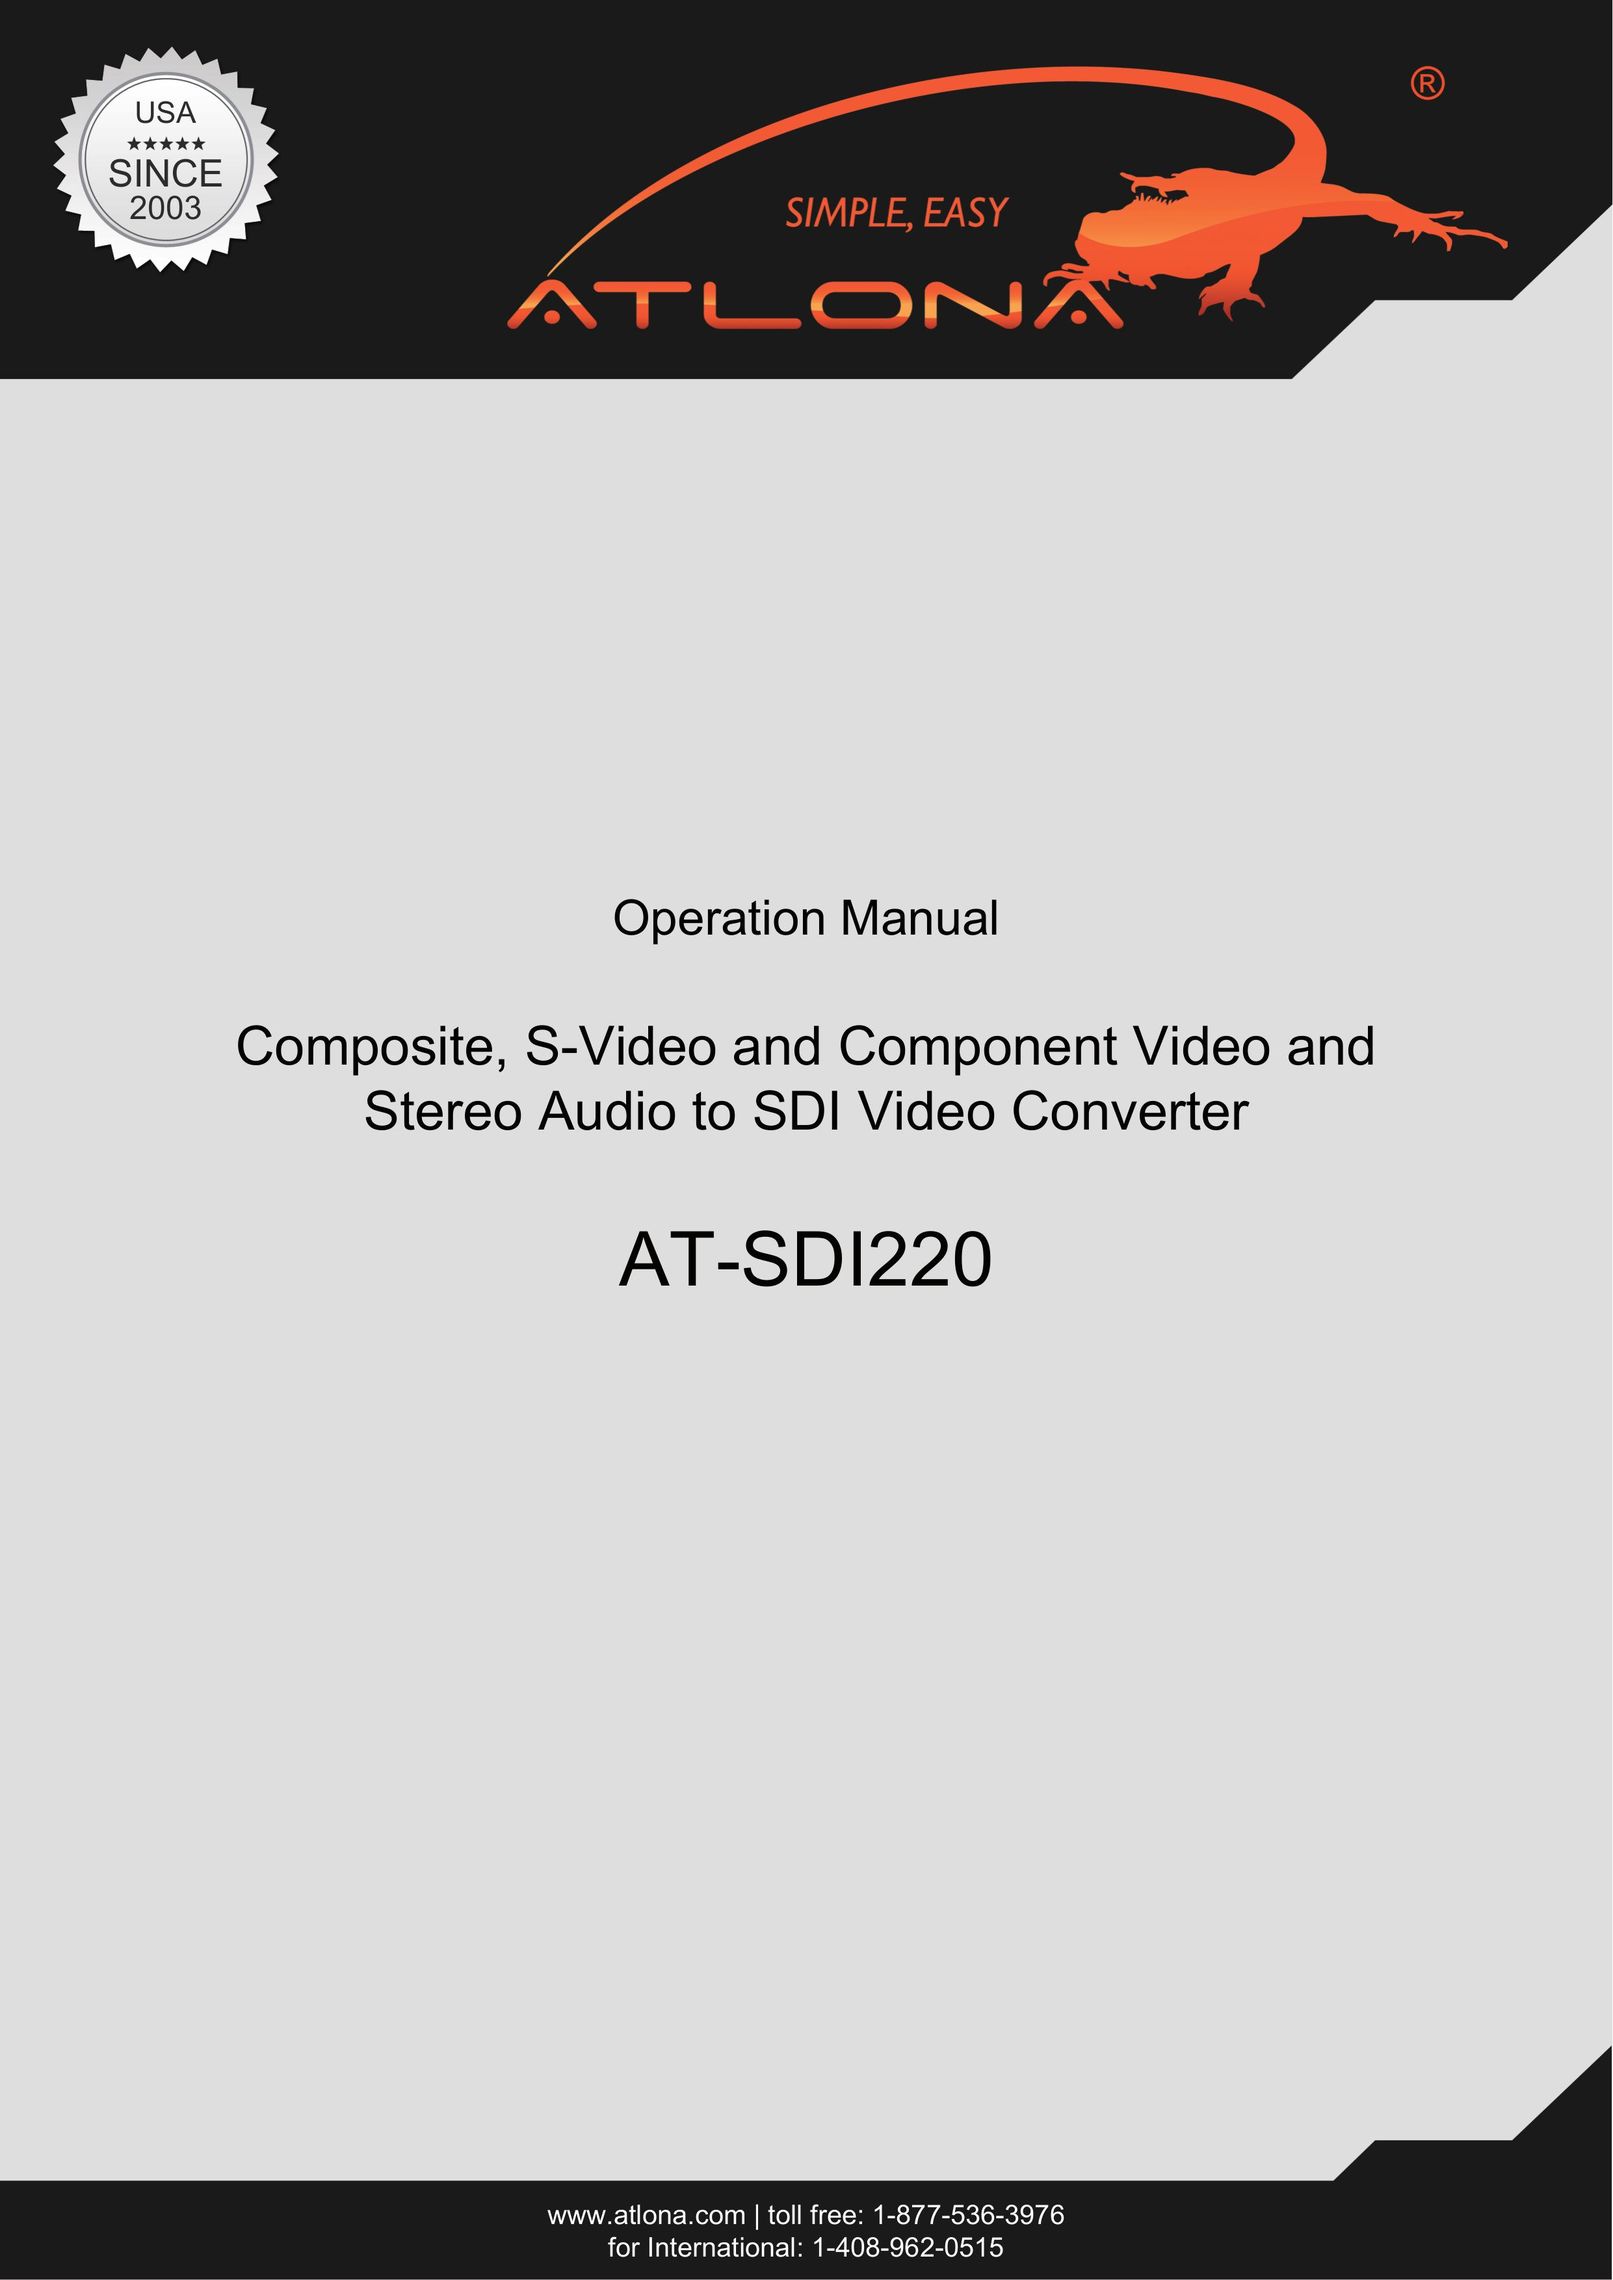 Atlona AT-SDI220 Webcam User Manual